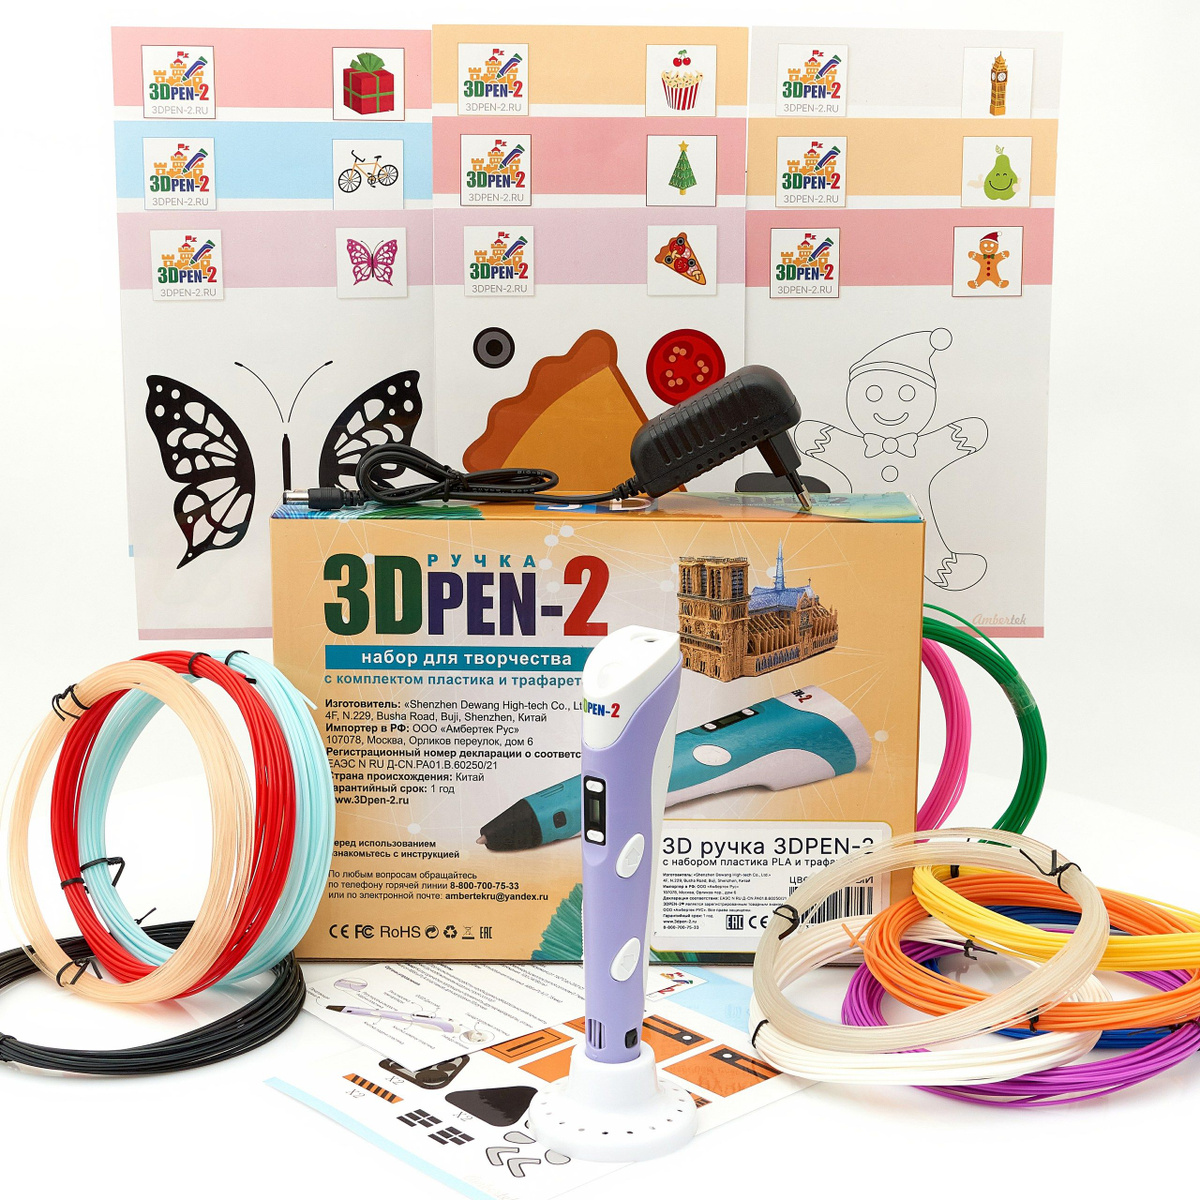 Описание 3Д-ручки 3DPEN-2